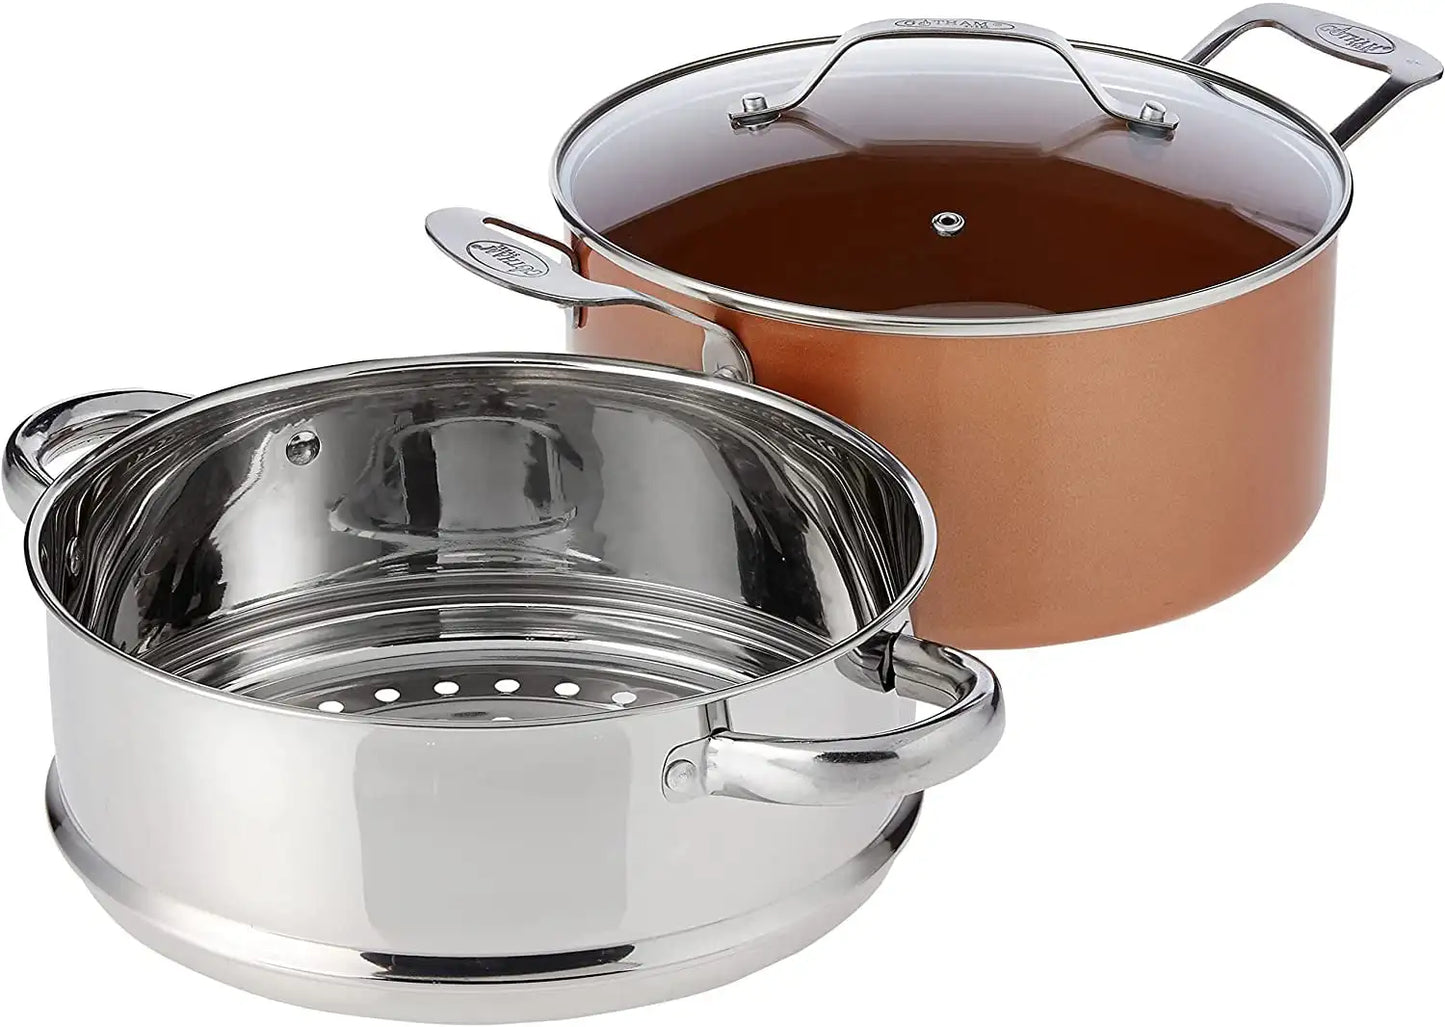 10Pc Pots and Pans Set Nonstick Cookware Set Copper